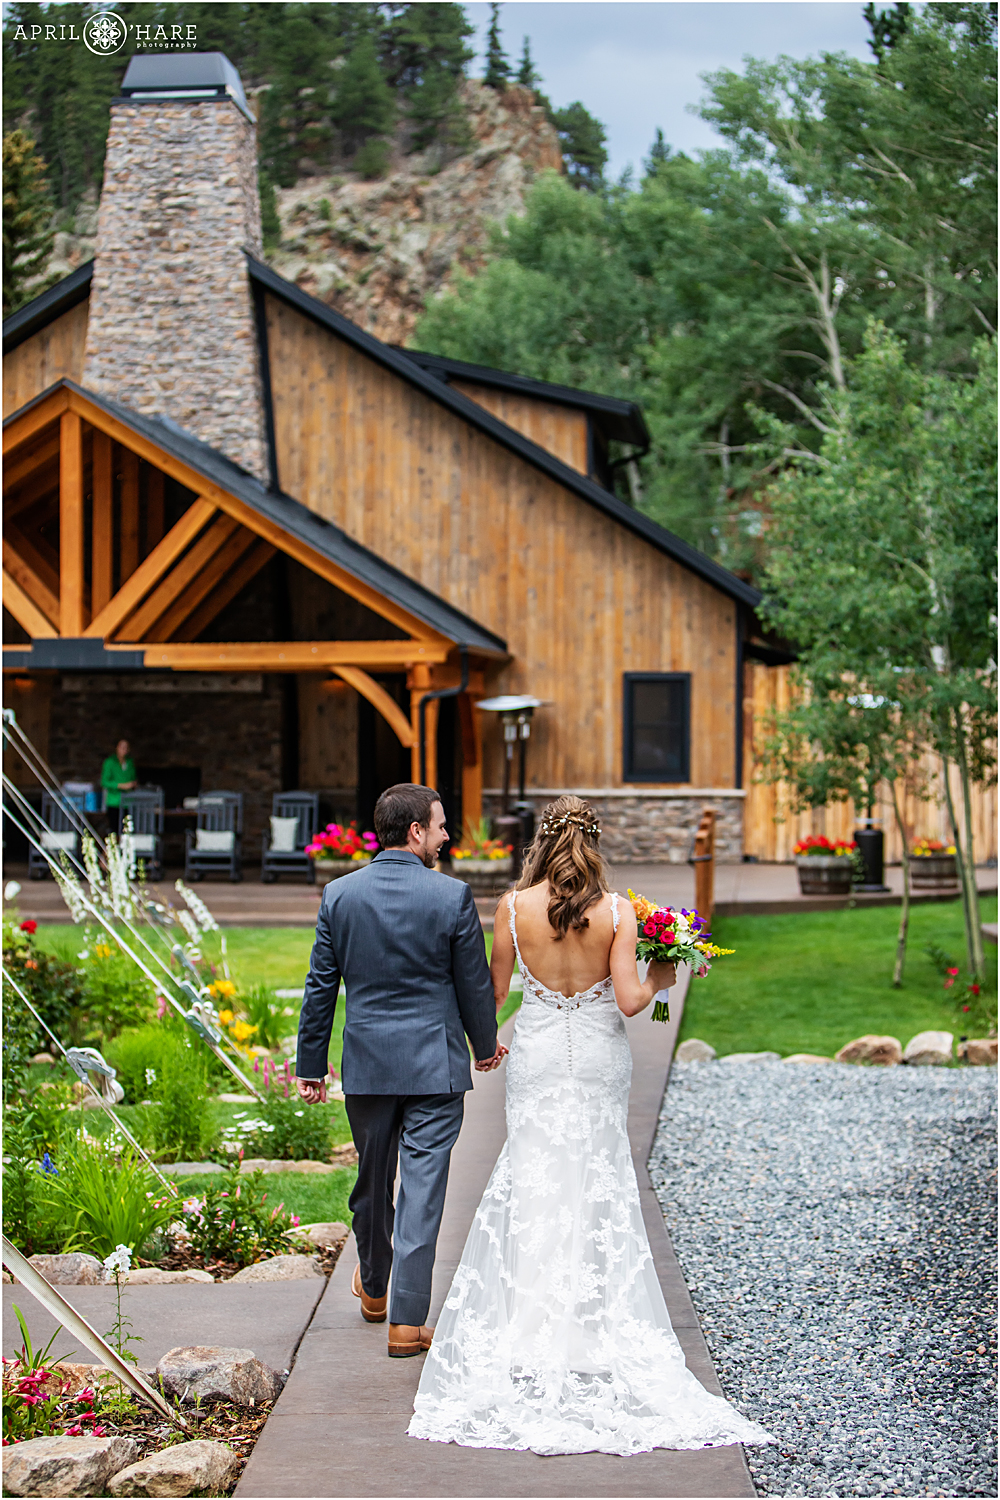 Beautiful Colorado wedding venue Blackstone Rivers Ranch